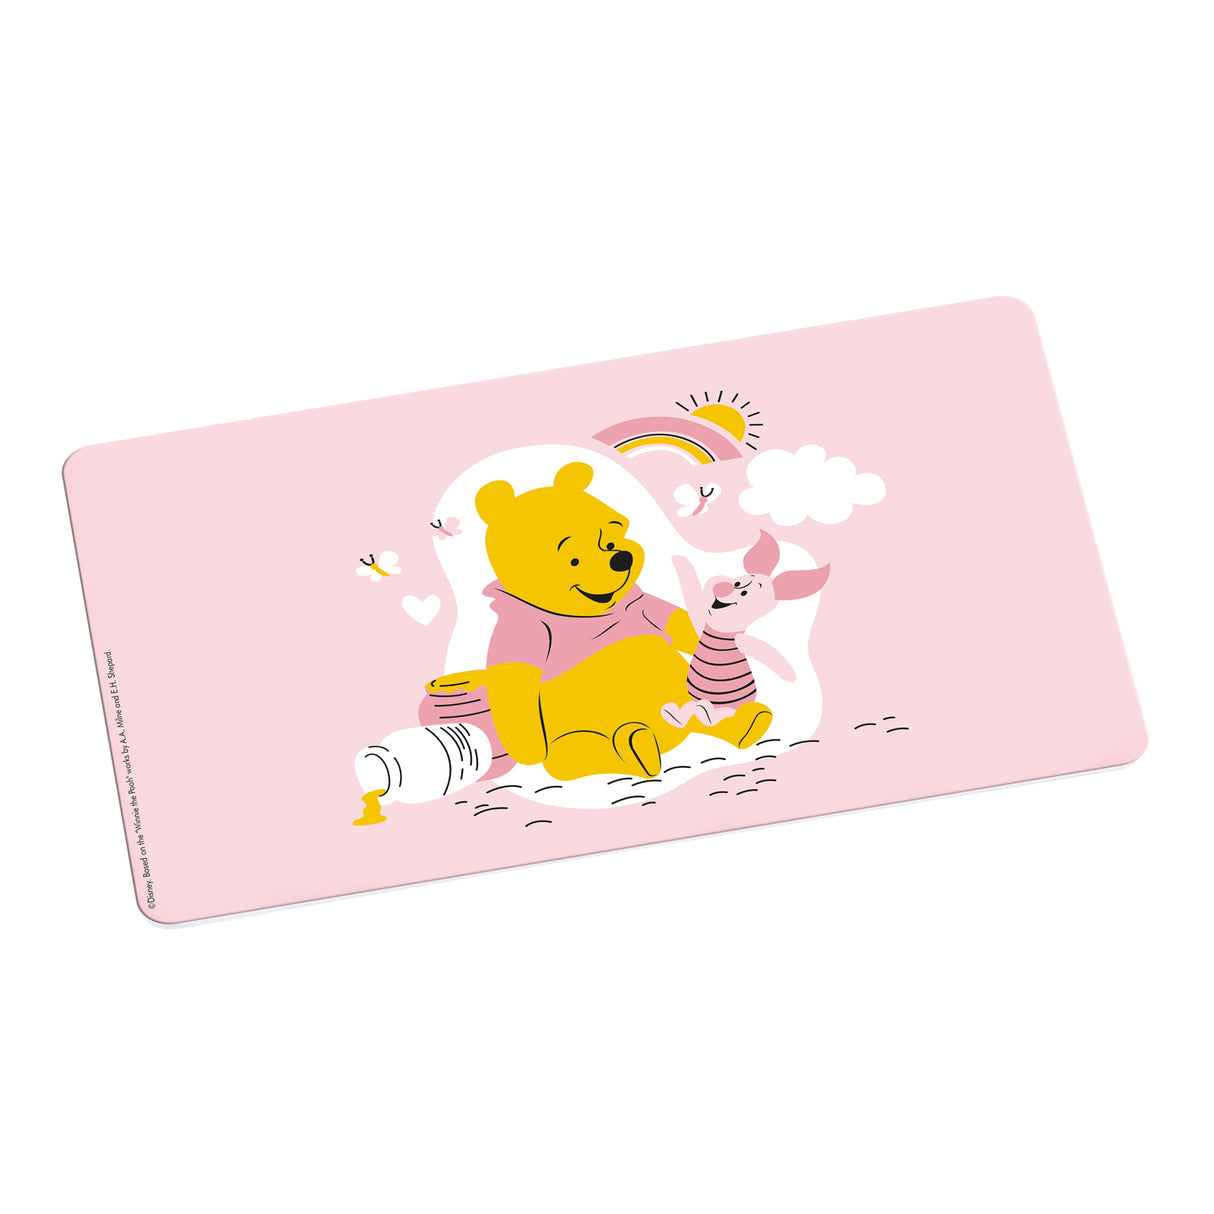 Brettchen »Winnie Pooh Friendlier«